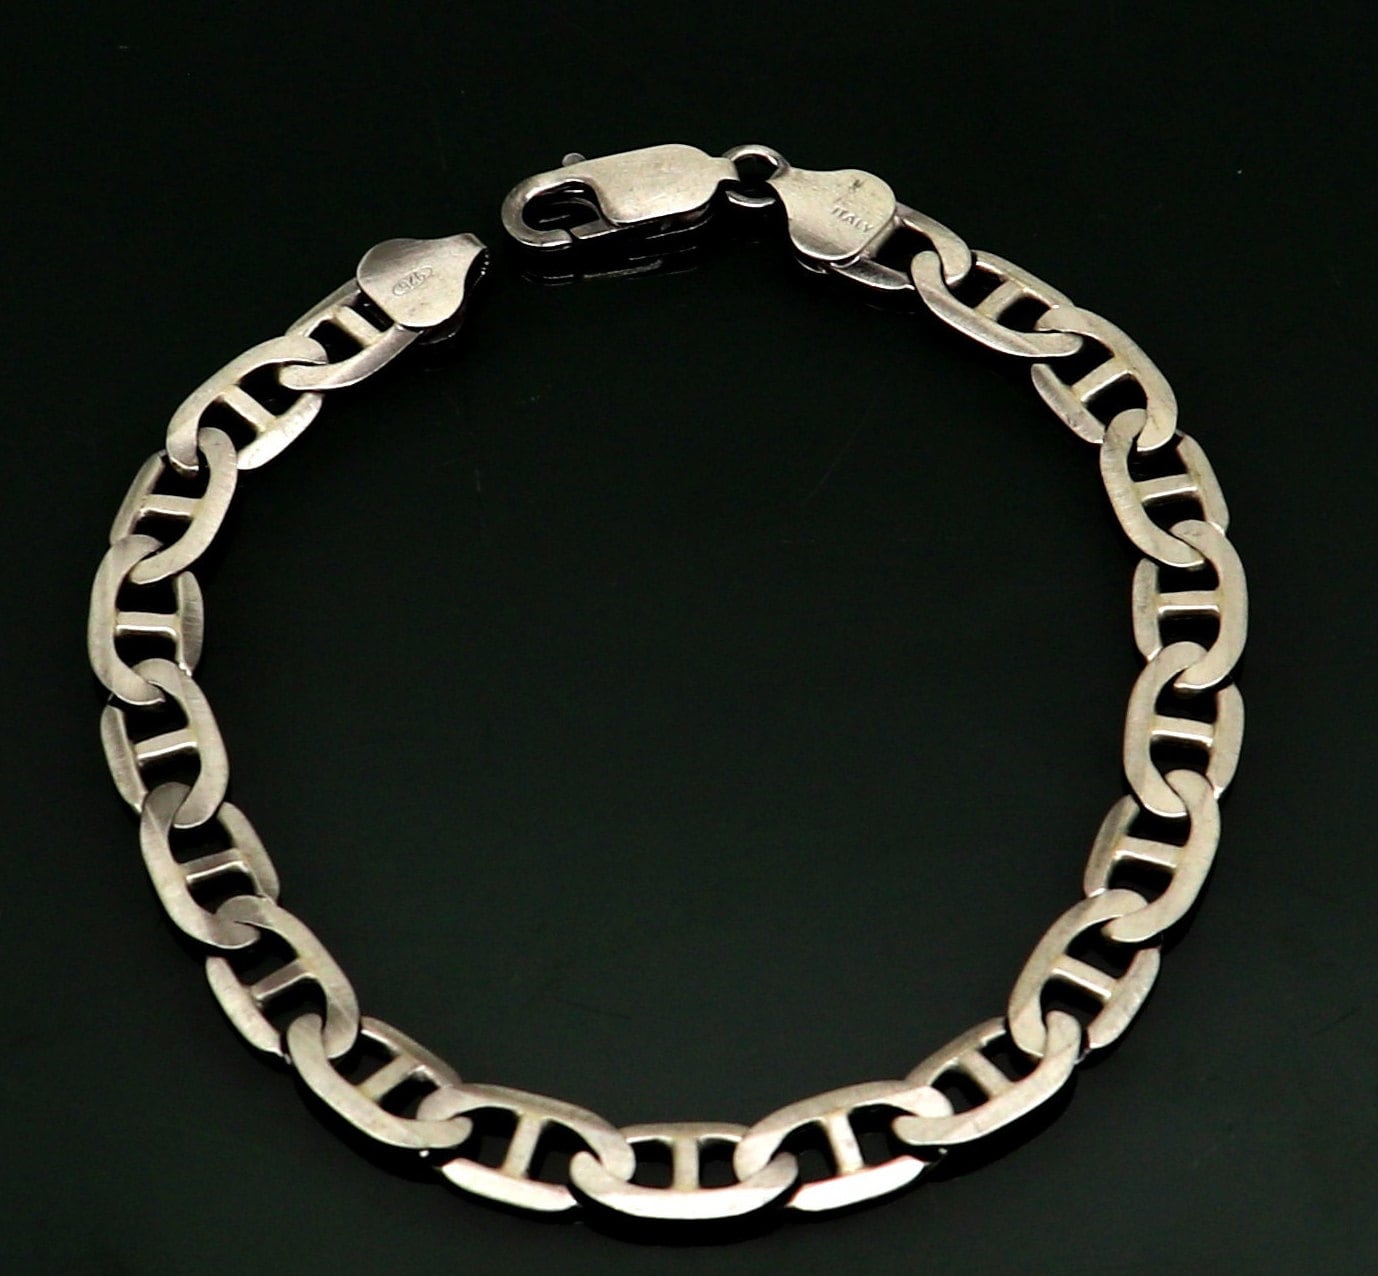 925 Sterling silver handmade designer flexible oxidized plain link men's bracelet gorgeous Italy made designer jewelry for men's sbr258 - TRIBAL ORNAMENTS